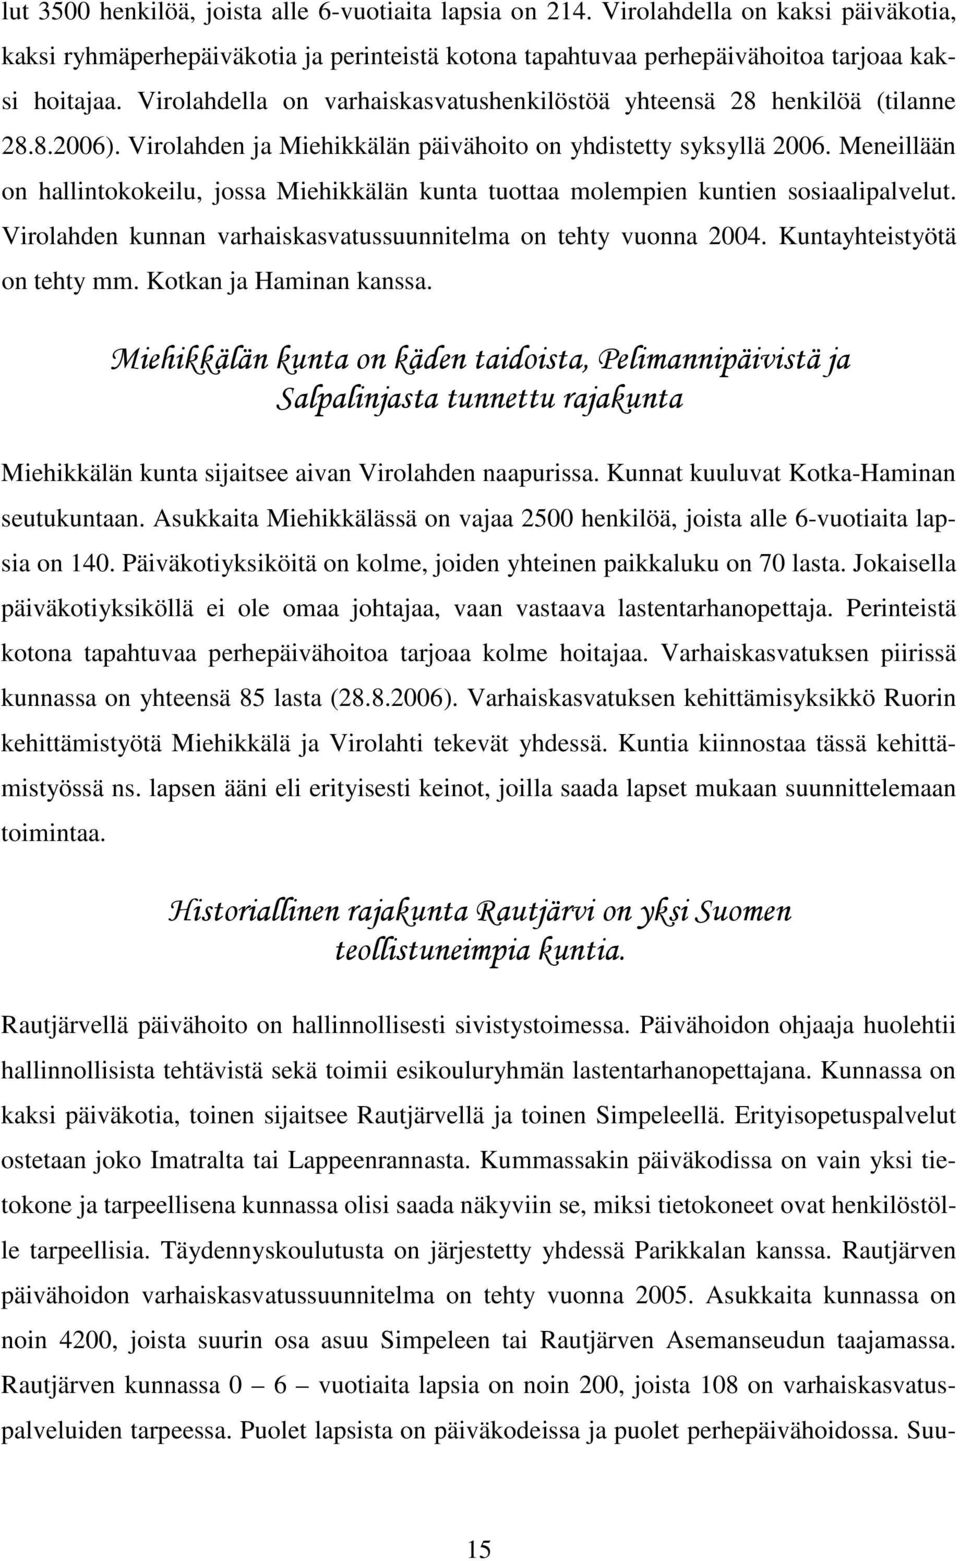 Meneillään on hallintokokeilu, jossa Miehikkälän kunta tuottaa molempien kuntien sosiaalipalvelut. Virolahden kunnan varhaiskasvatussuunnitelma on tehty vuonna 2004. Kuntayhteistyötä on tehty mm.